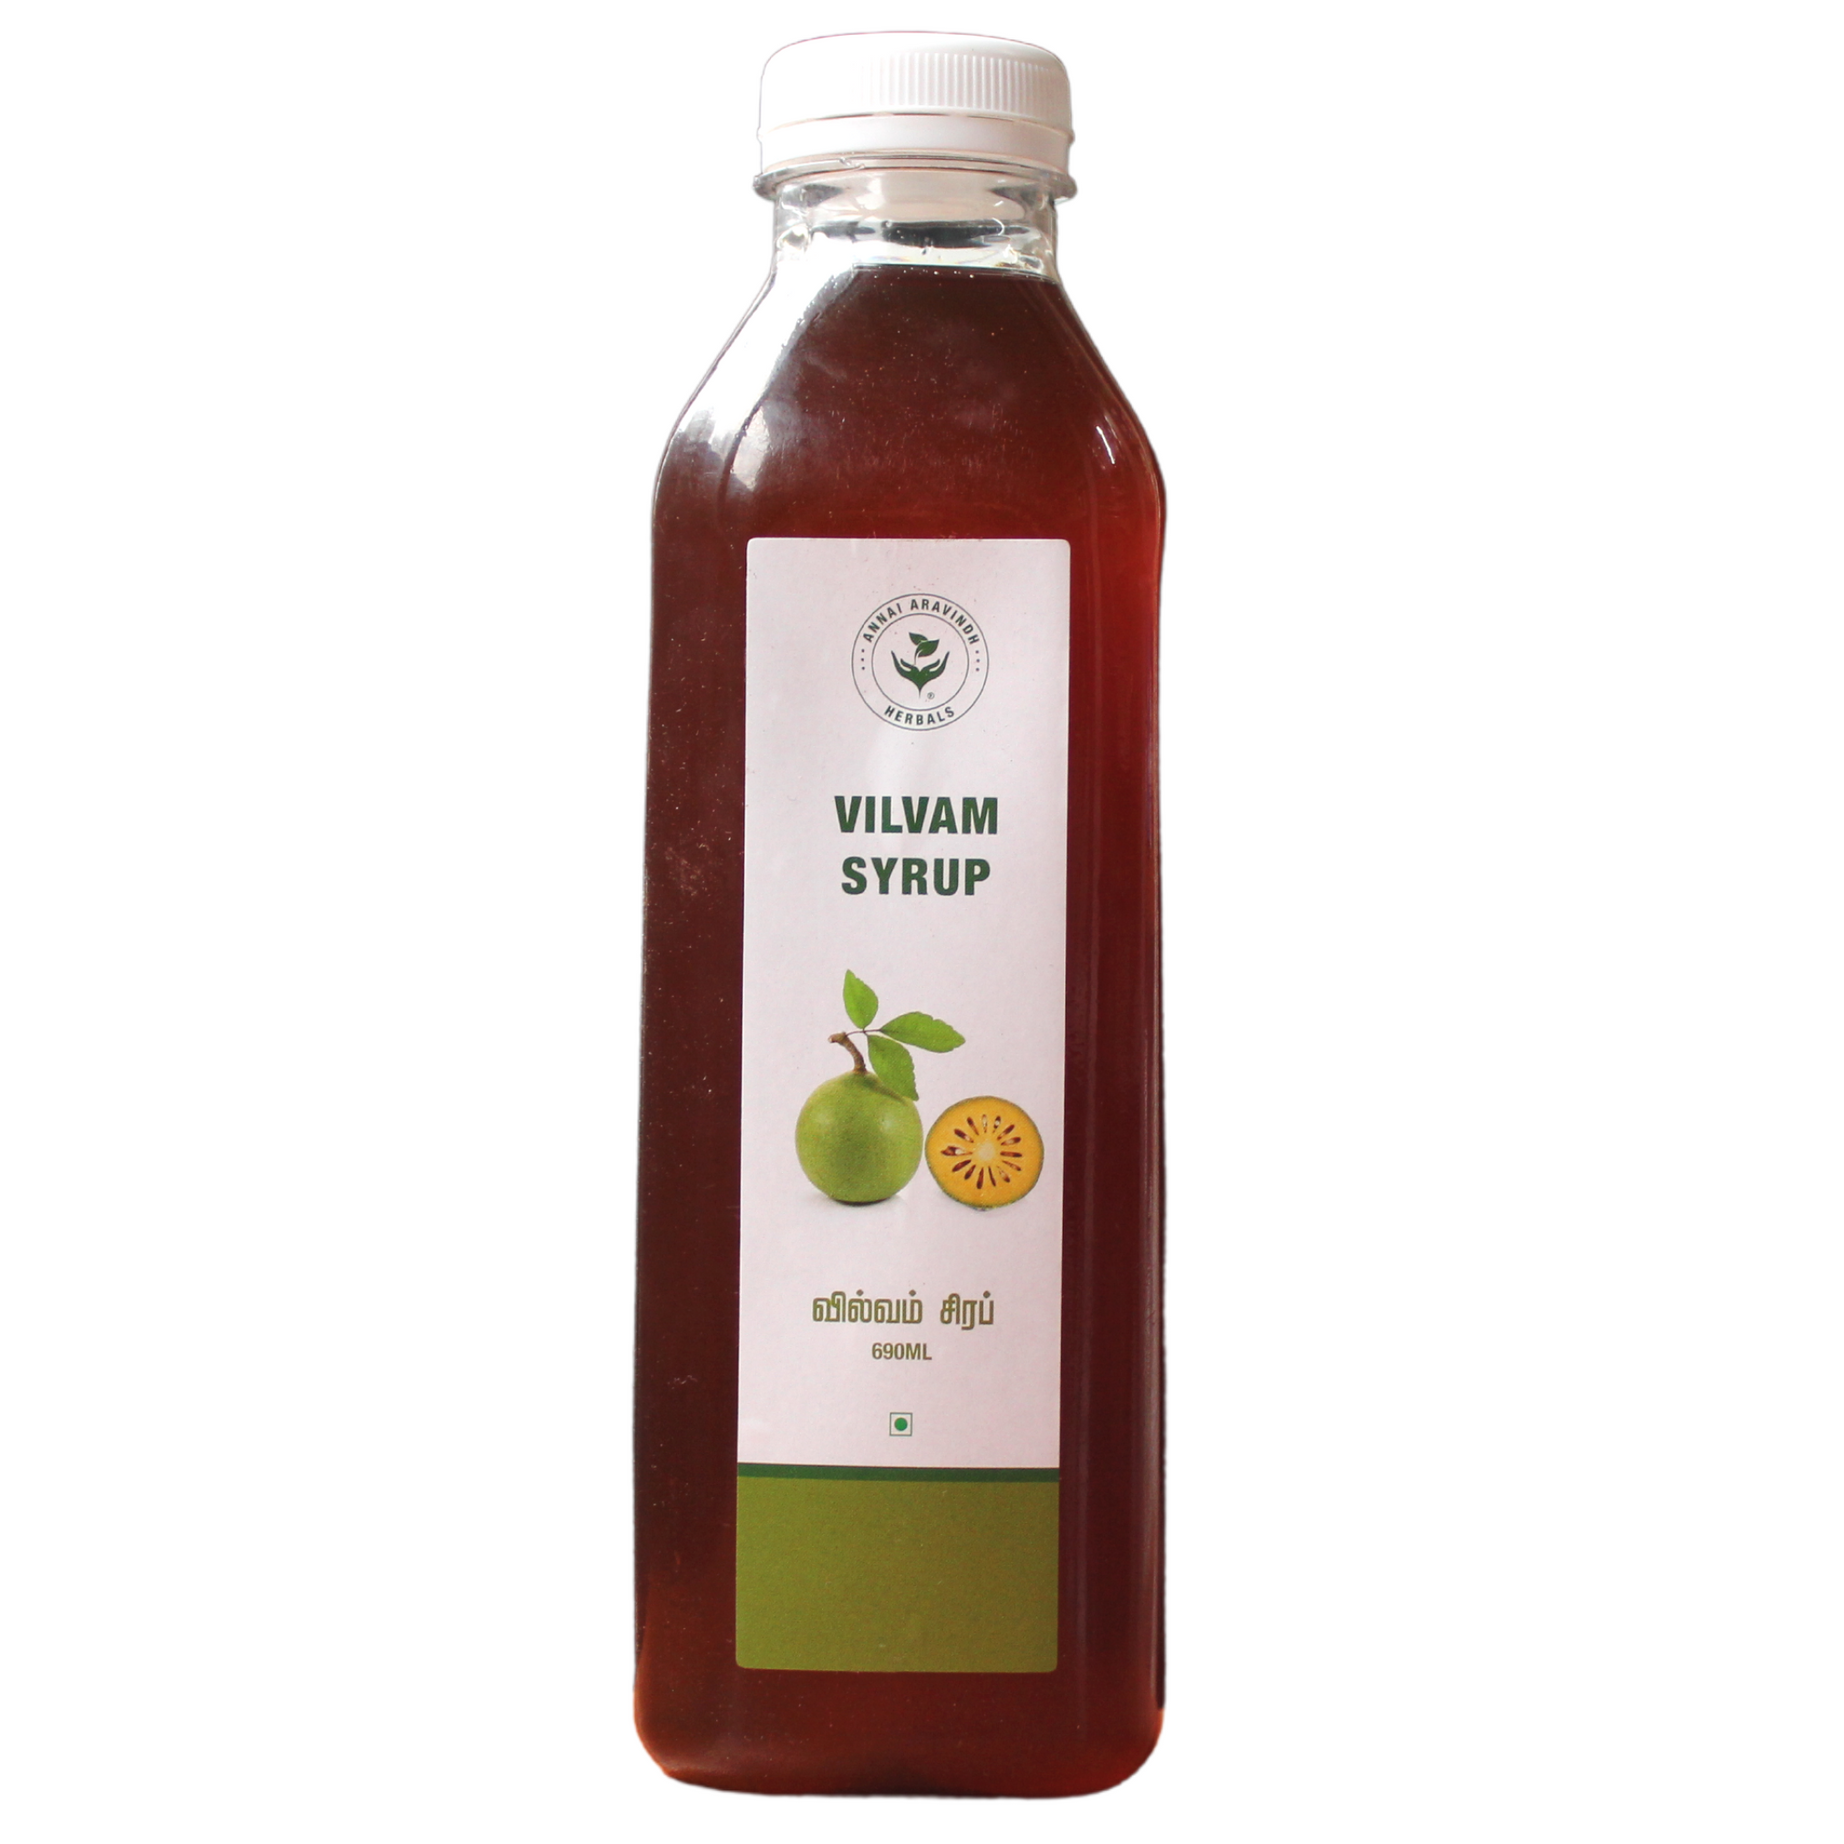 Shop Annai aravindh Vilvam Syrup - 690ml at price 140.00 from Annai Aravindh Online - Ayush Care